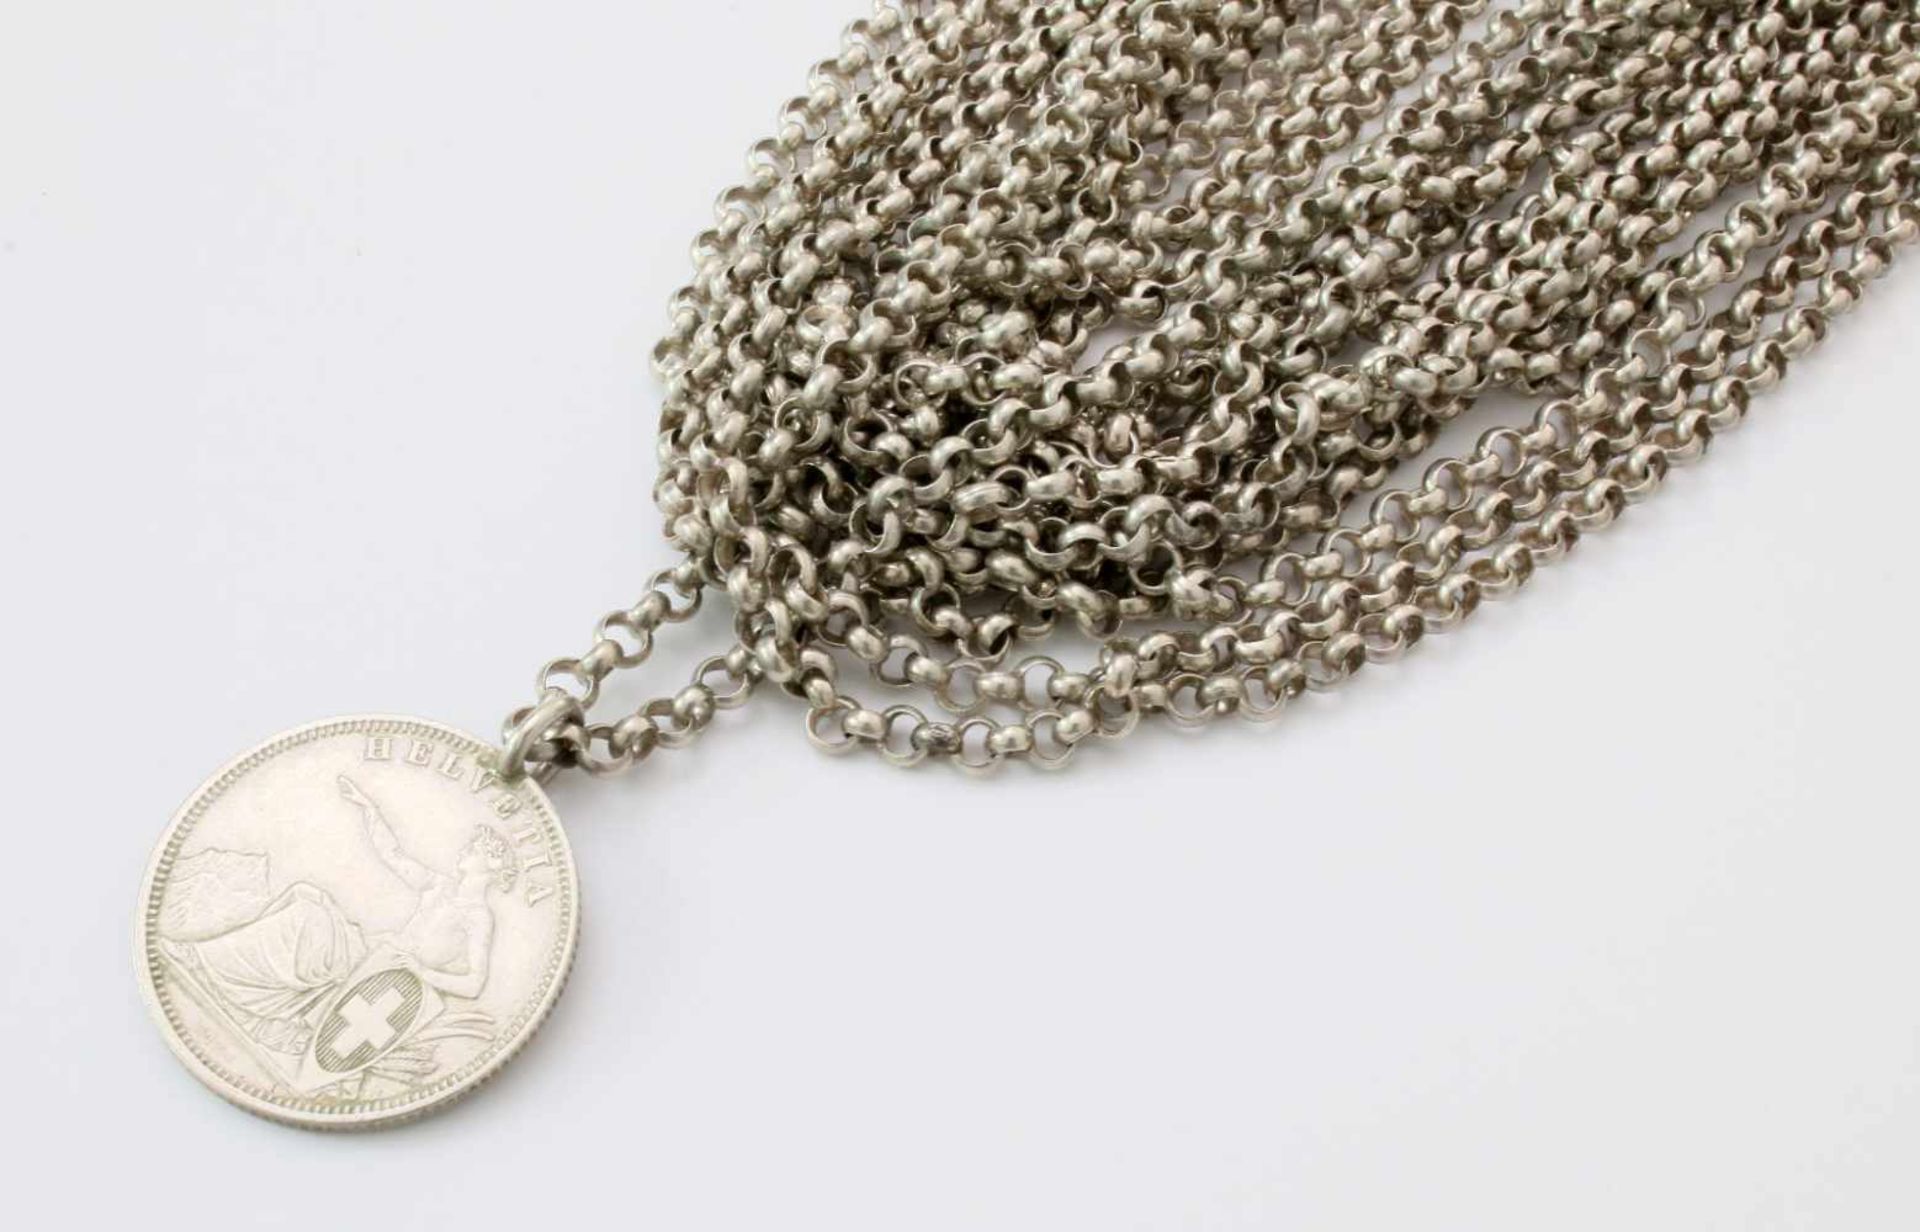 Silberne Kropfkette mit Steinbesatz um 186013-lötiges Silber, 18 Strangkette, mehrpassige - Bild 2 aus 3